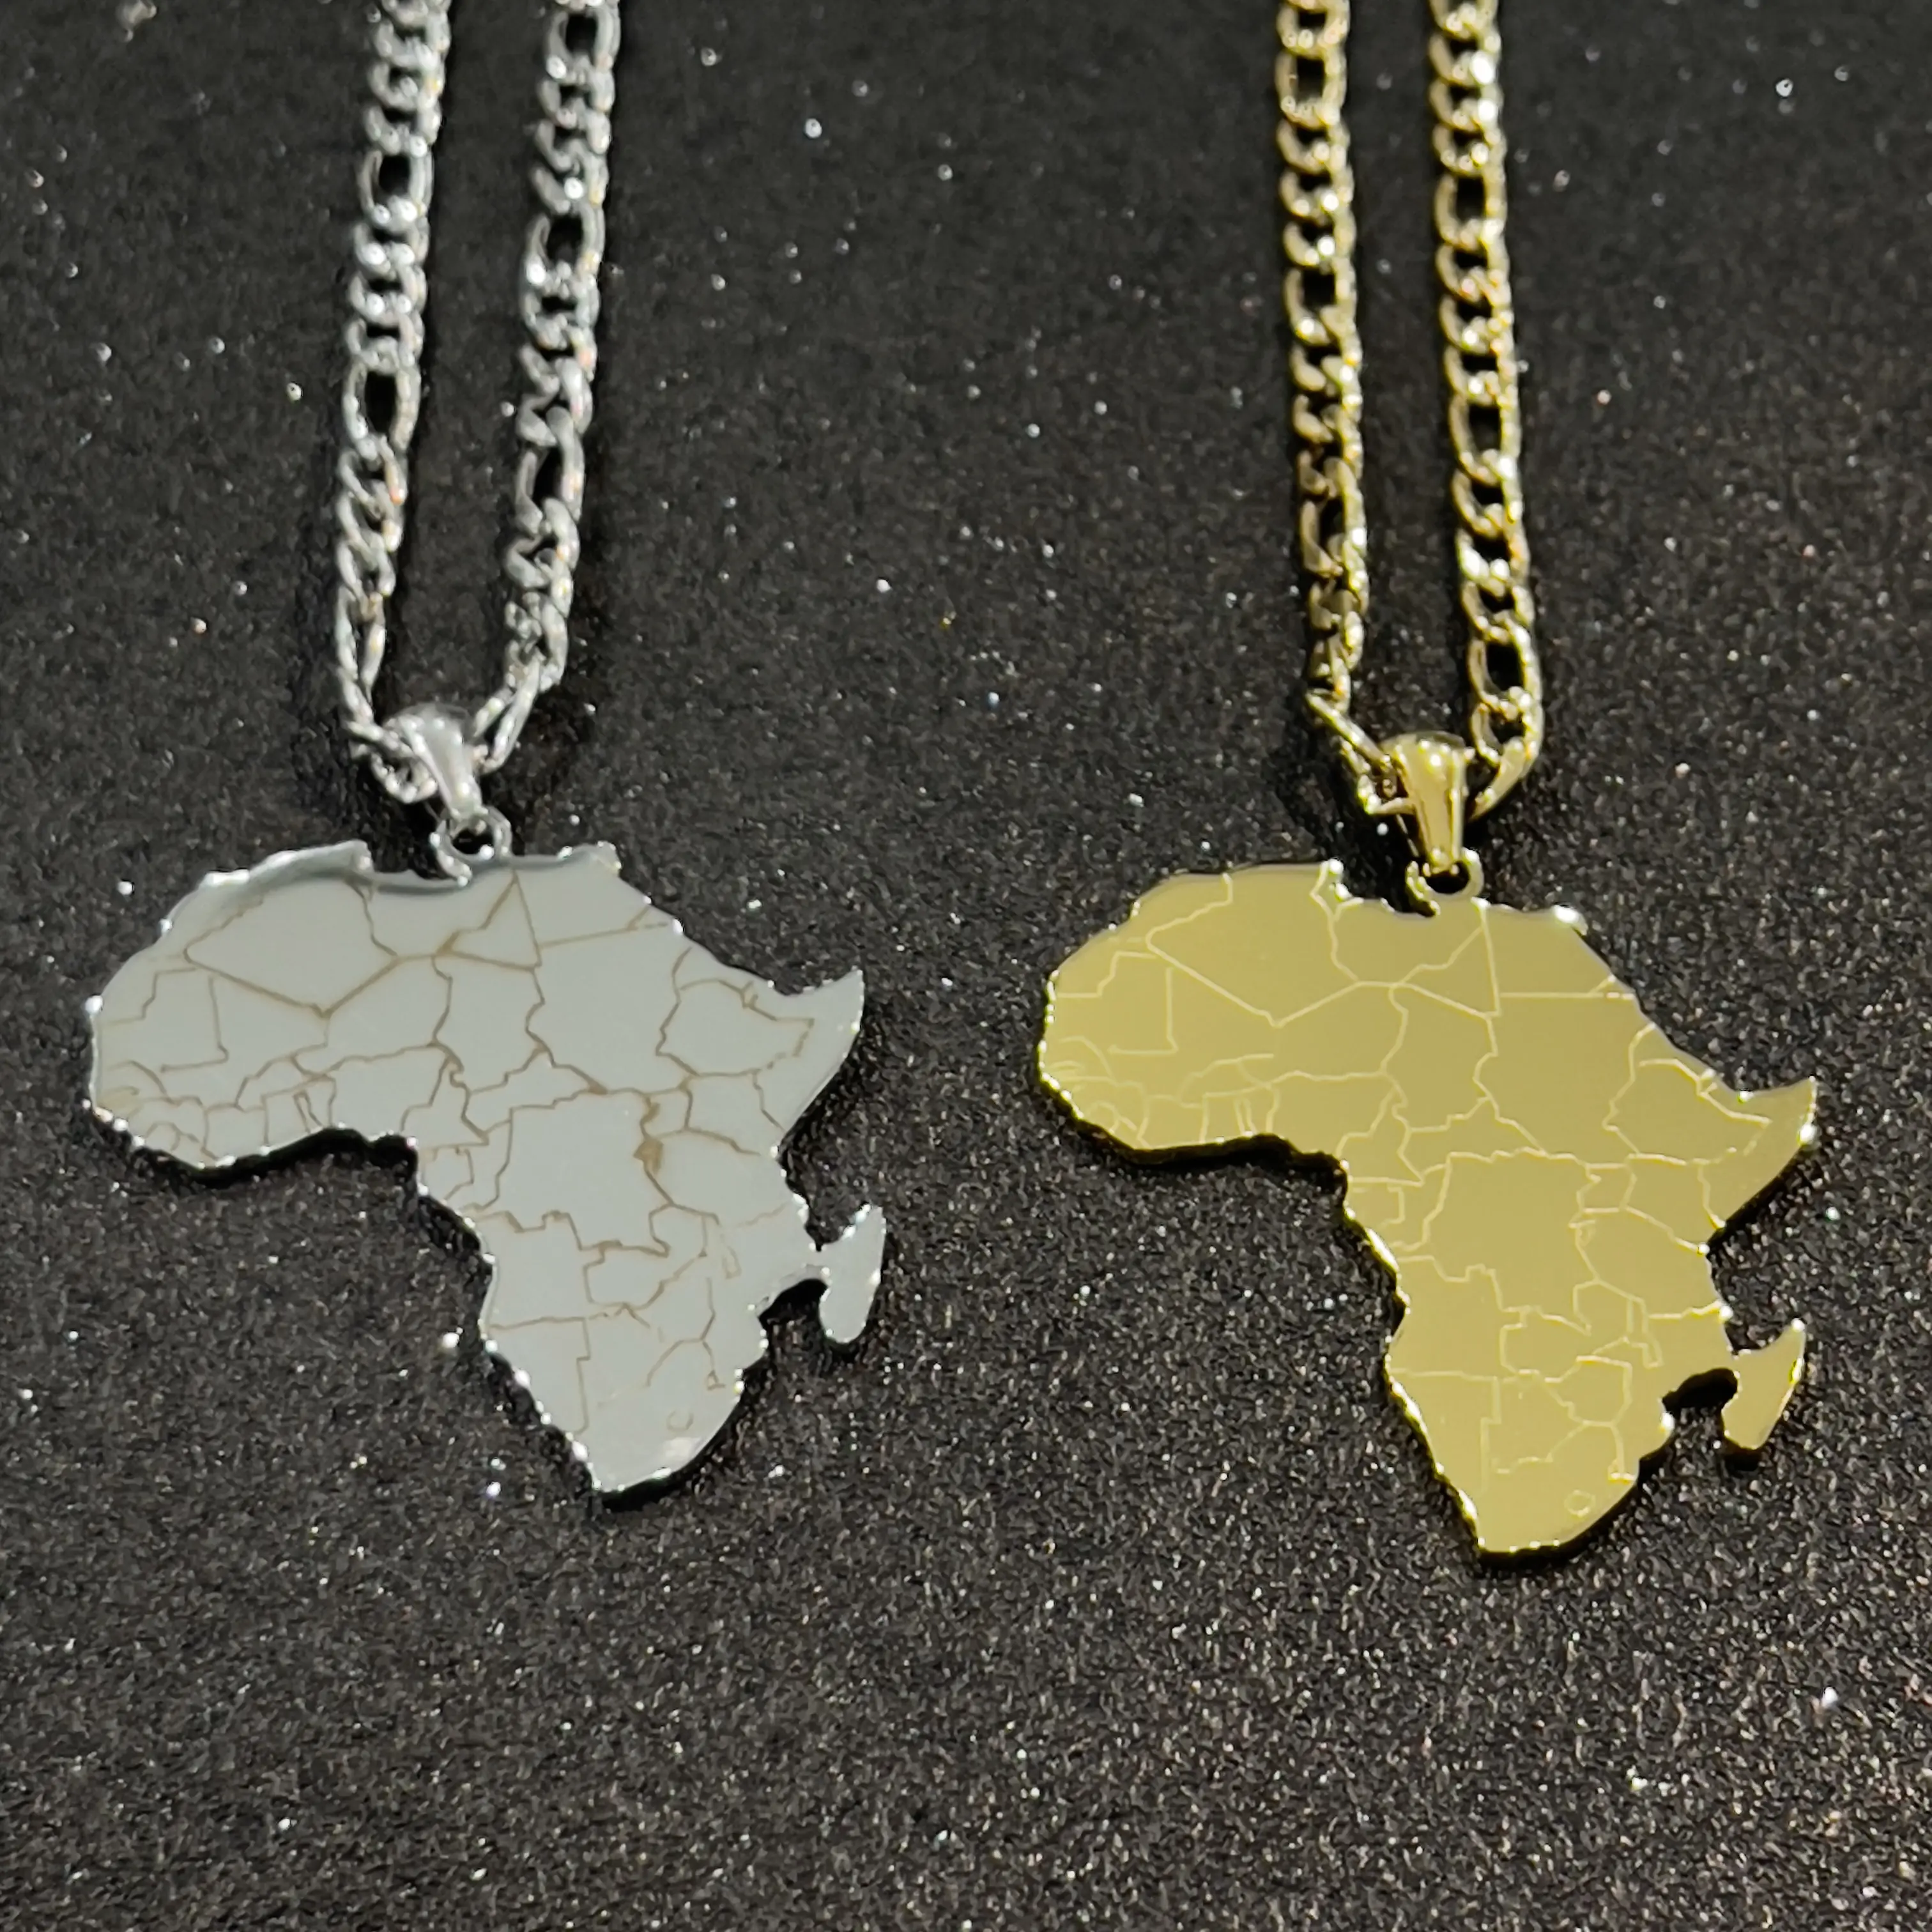 Yüksek kaliteli Hip-hop tarzı paslanmaz çelik afrika harita kolye kolye altın renk takı kadın erkek için